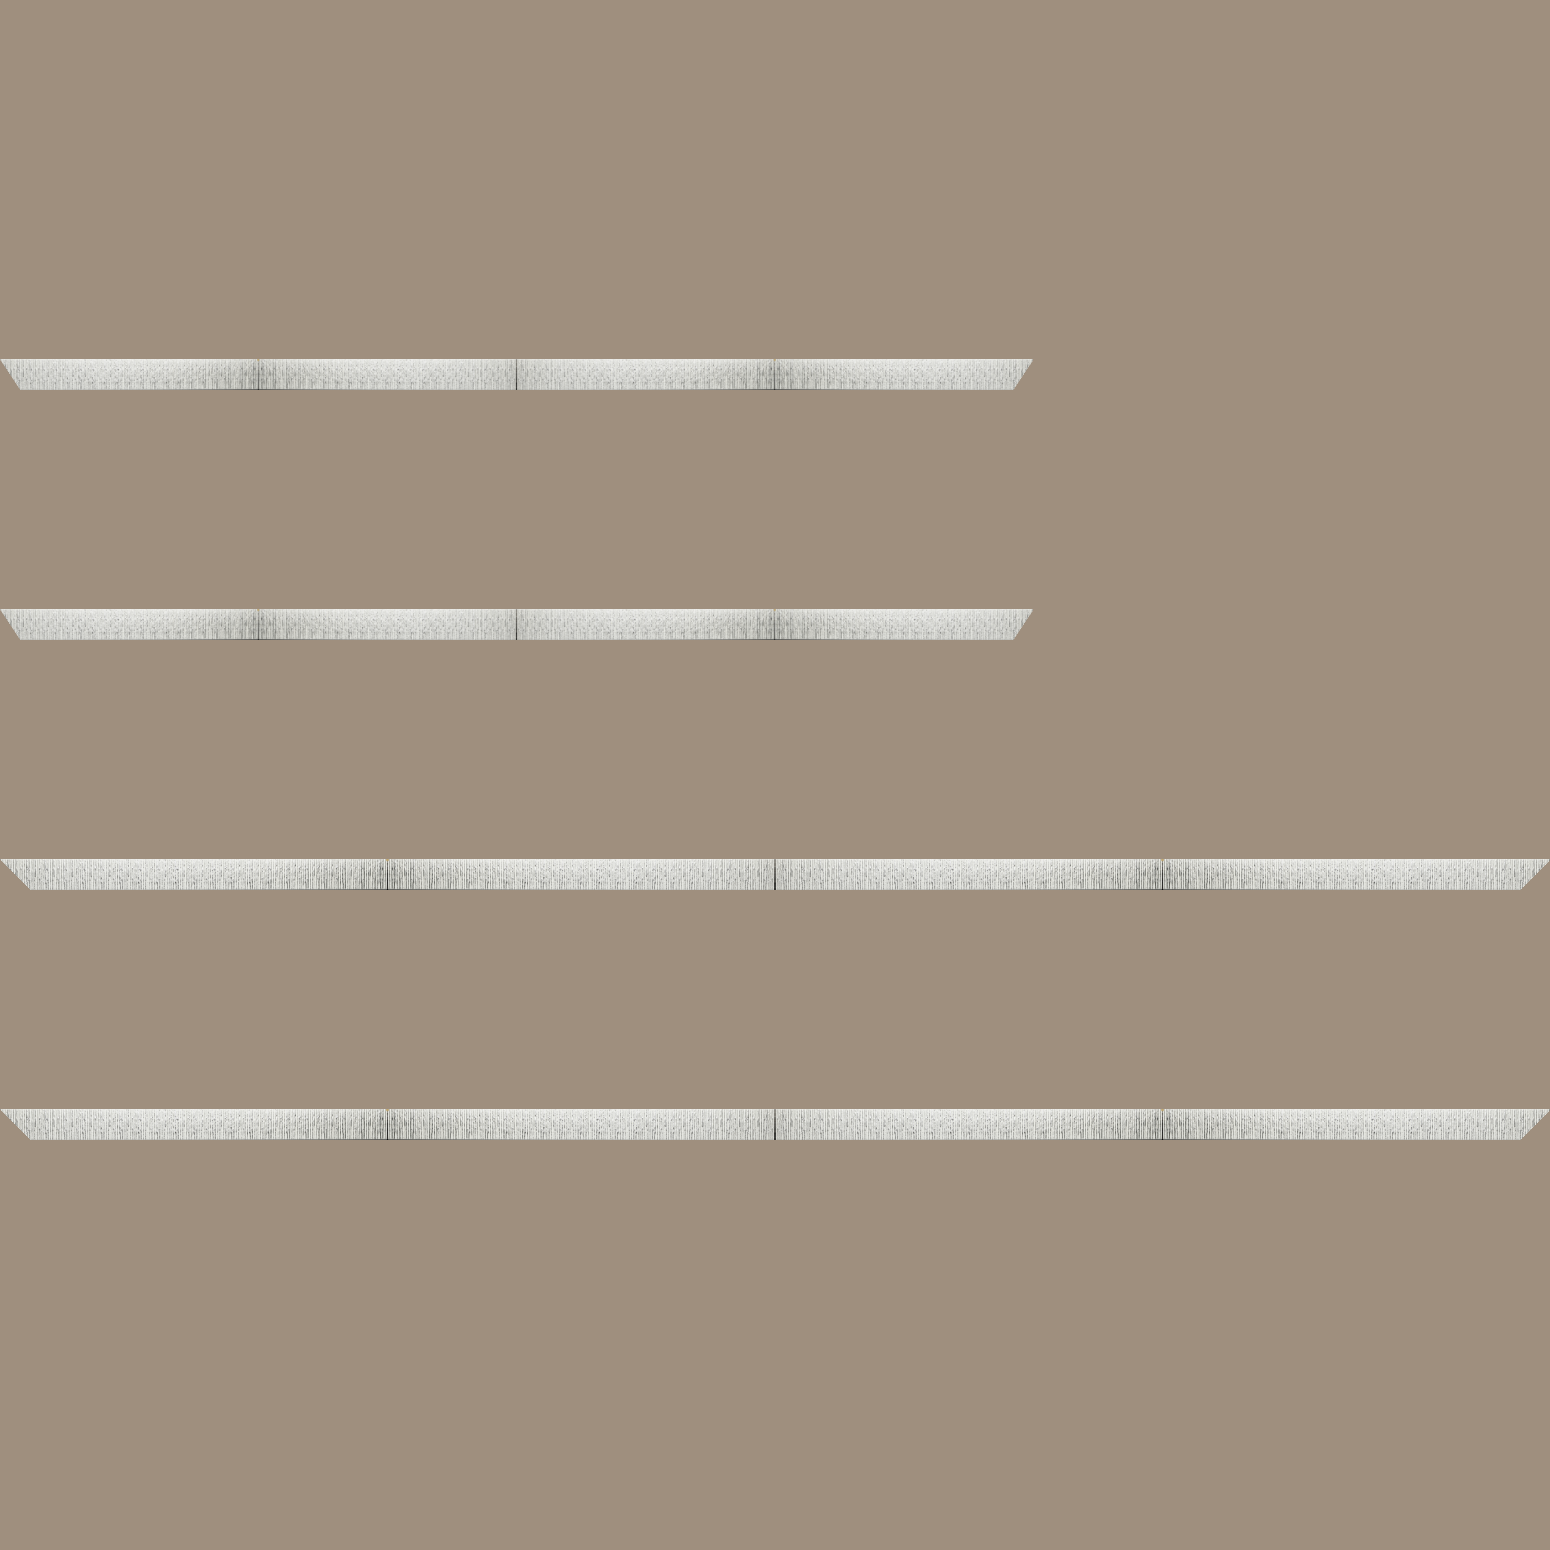 Baguette bois profil plat largeur 10.5cm couleur blanc mat strié argent chromé en relief - 40x60